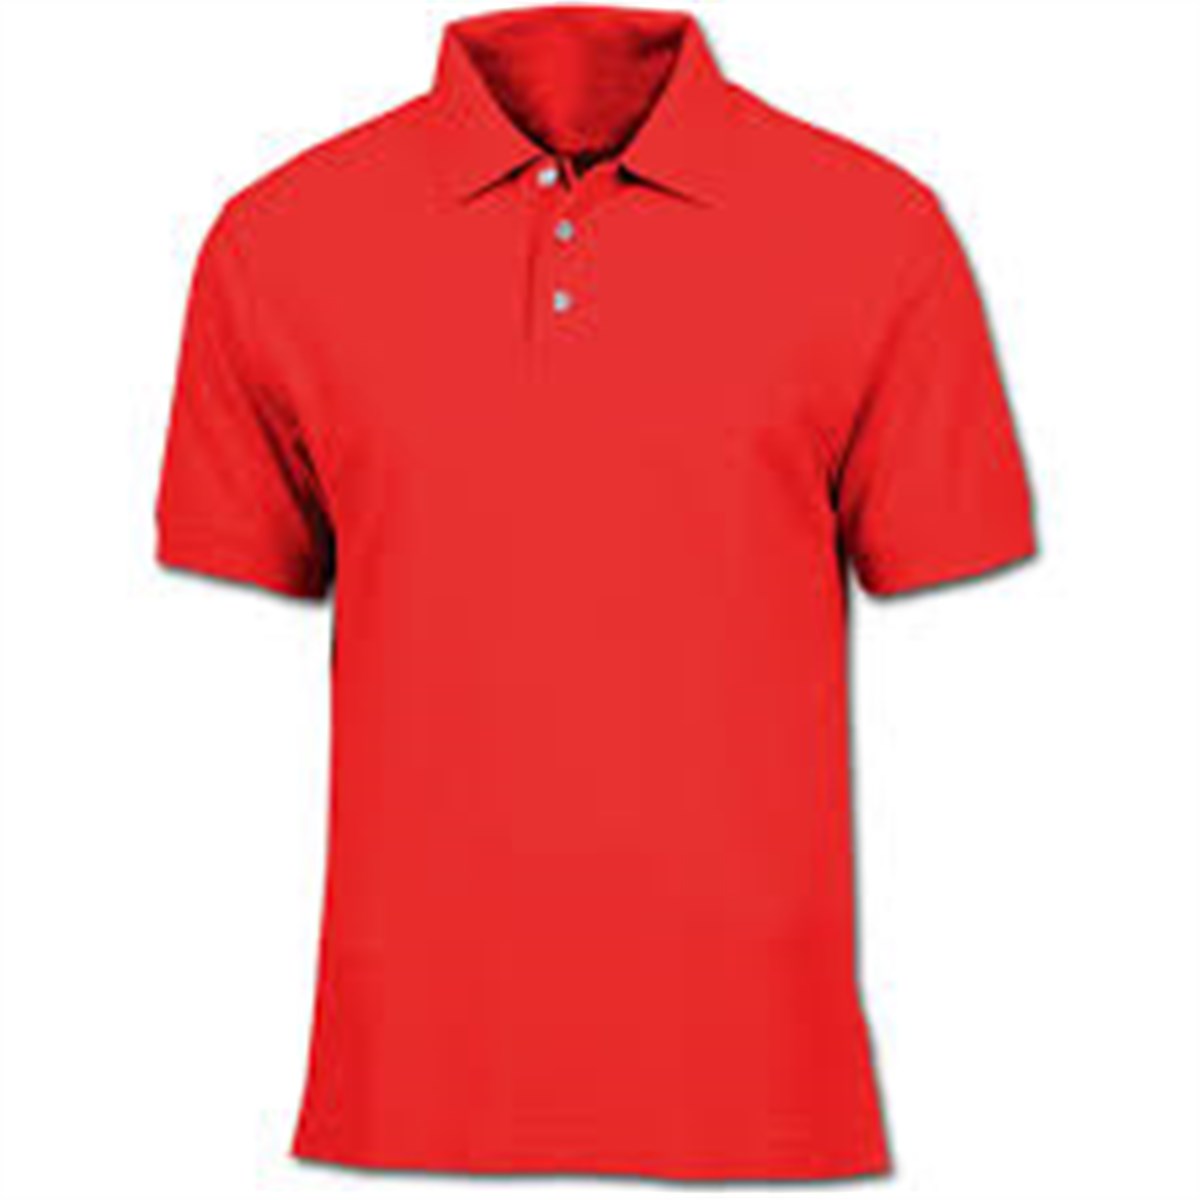 İş Elbiseleri Lacoste Polo Yaka T-Shirt Kırmızı